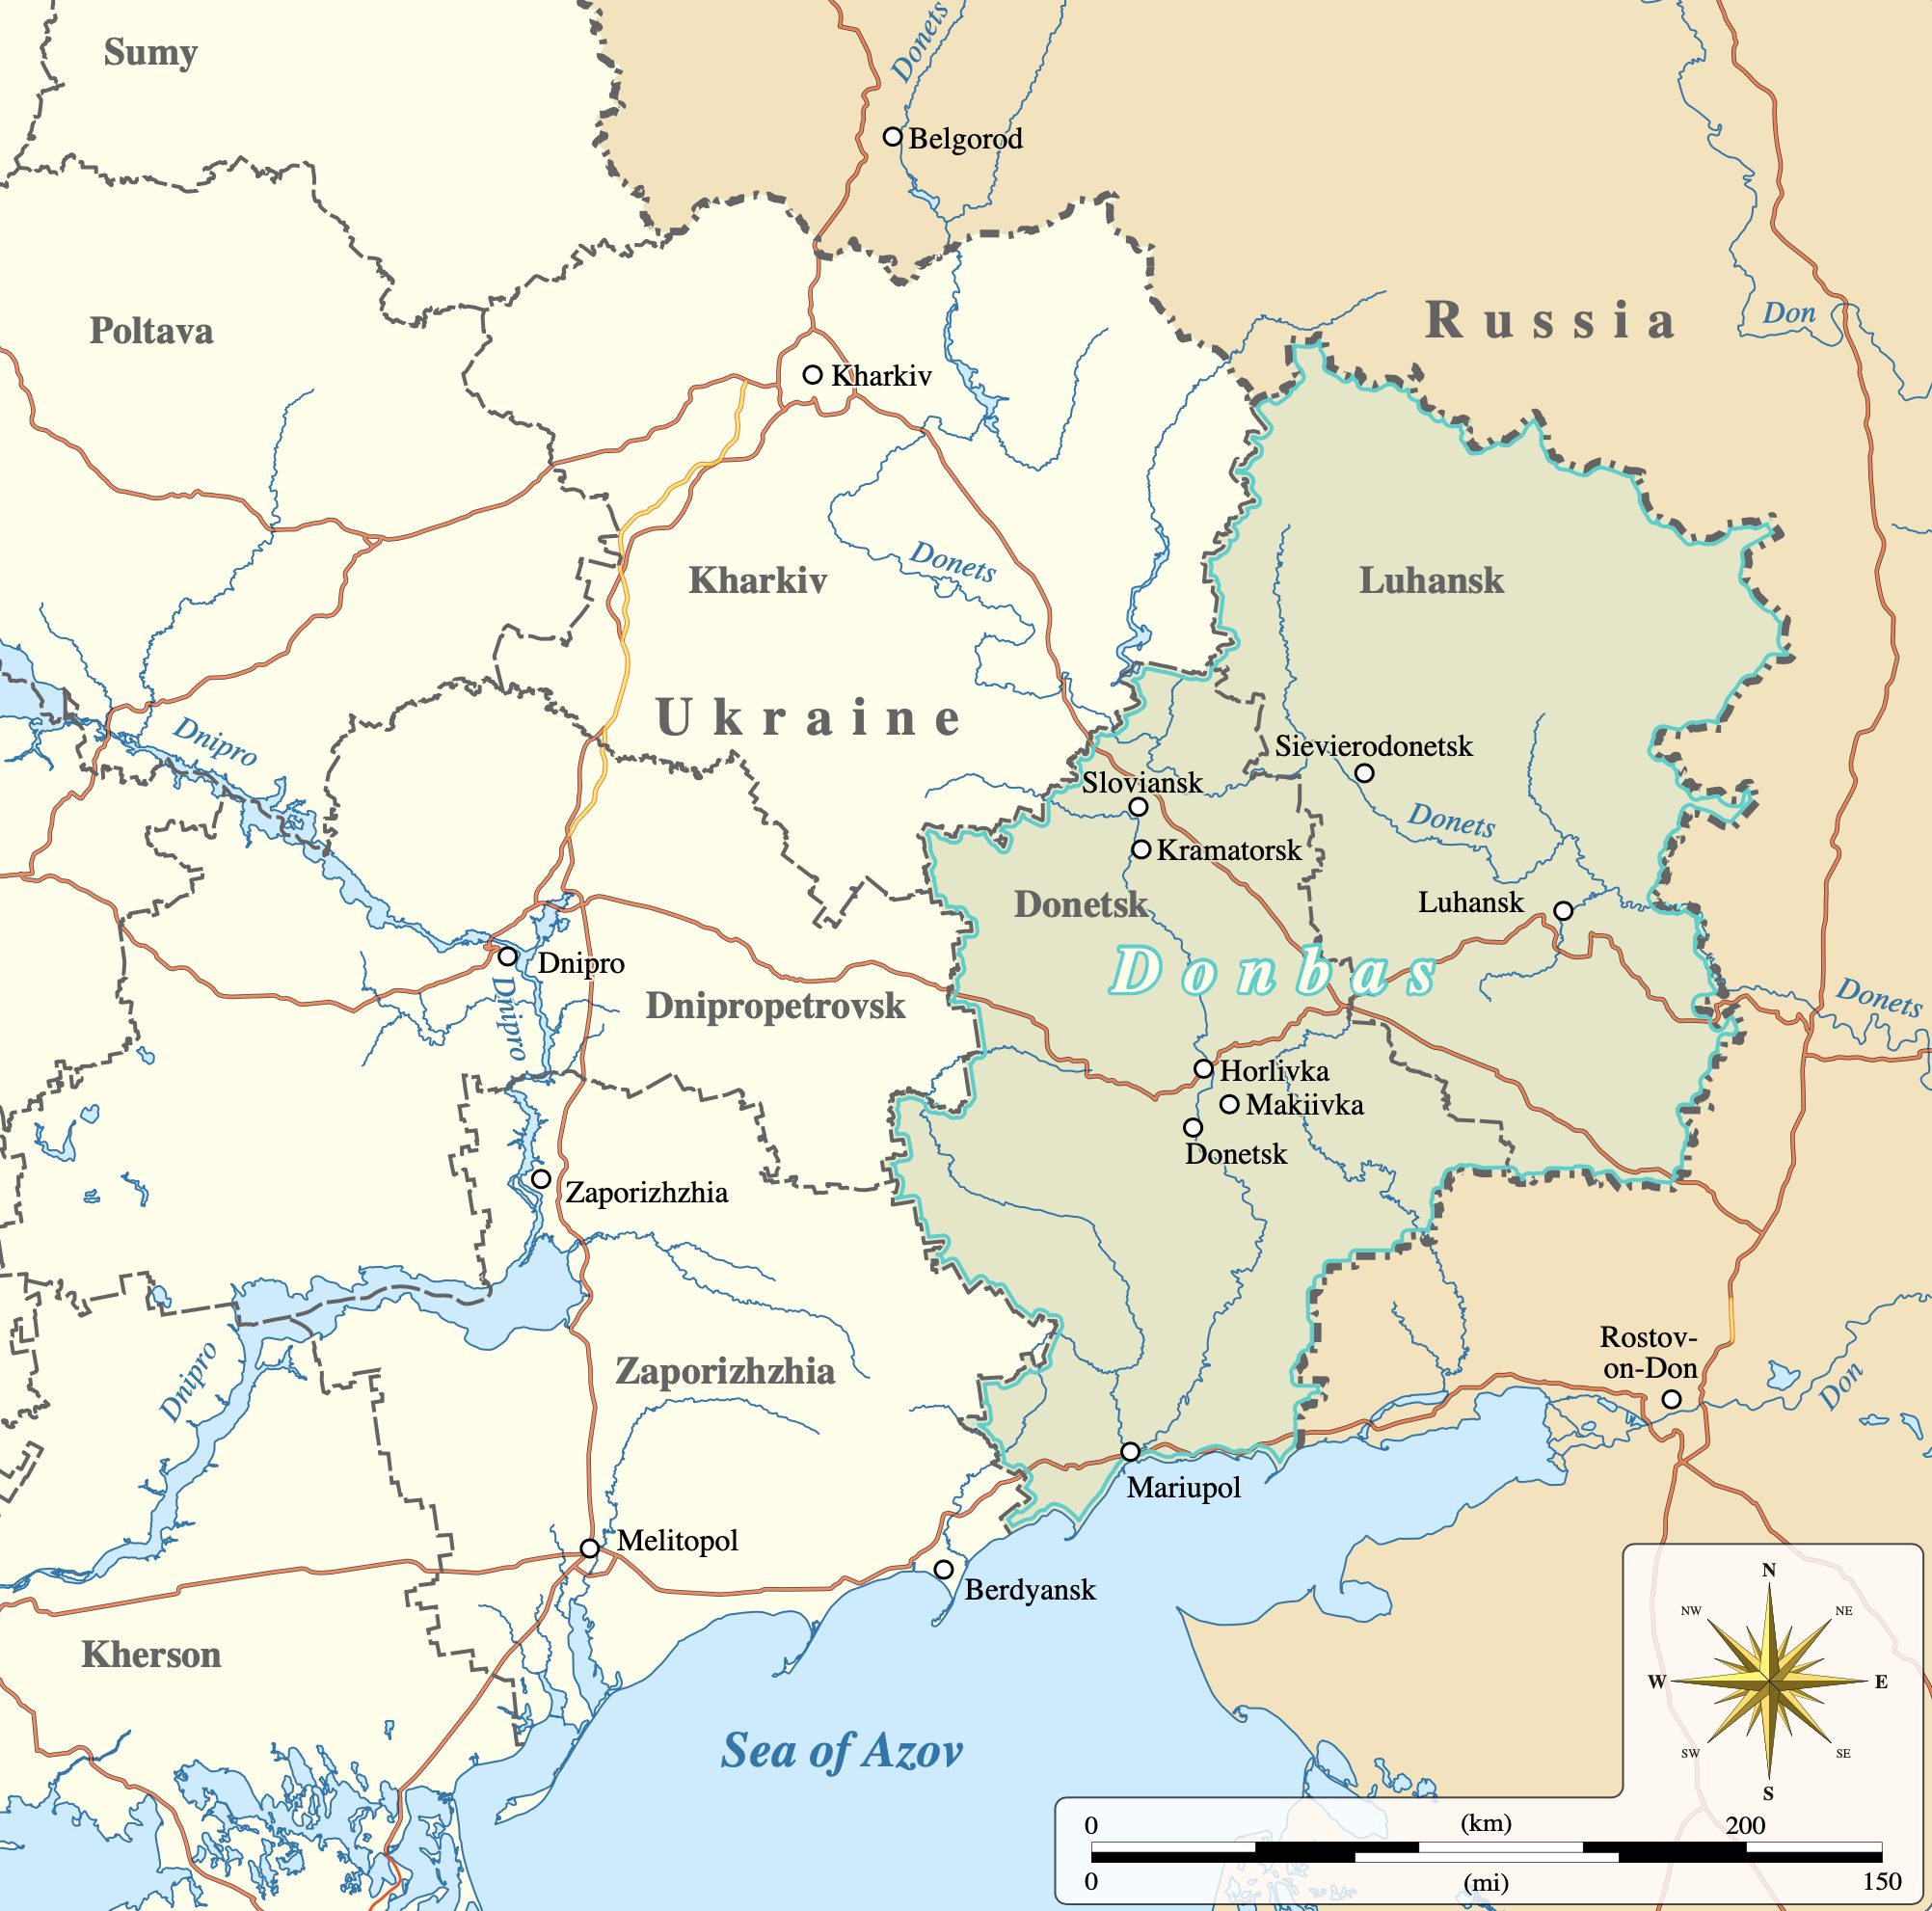 Der Donbass-Konflikt: Entstehung, Verlauf und Rezeption